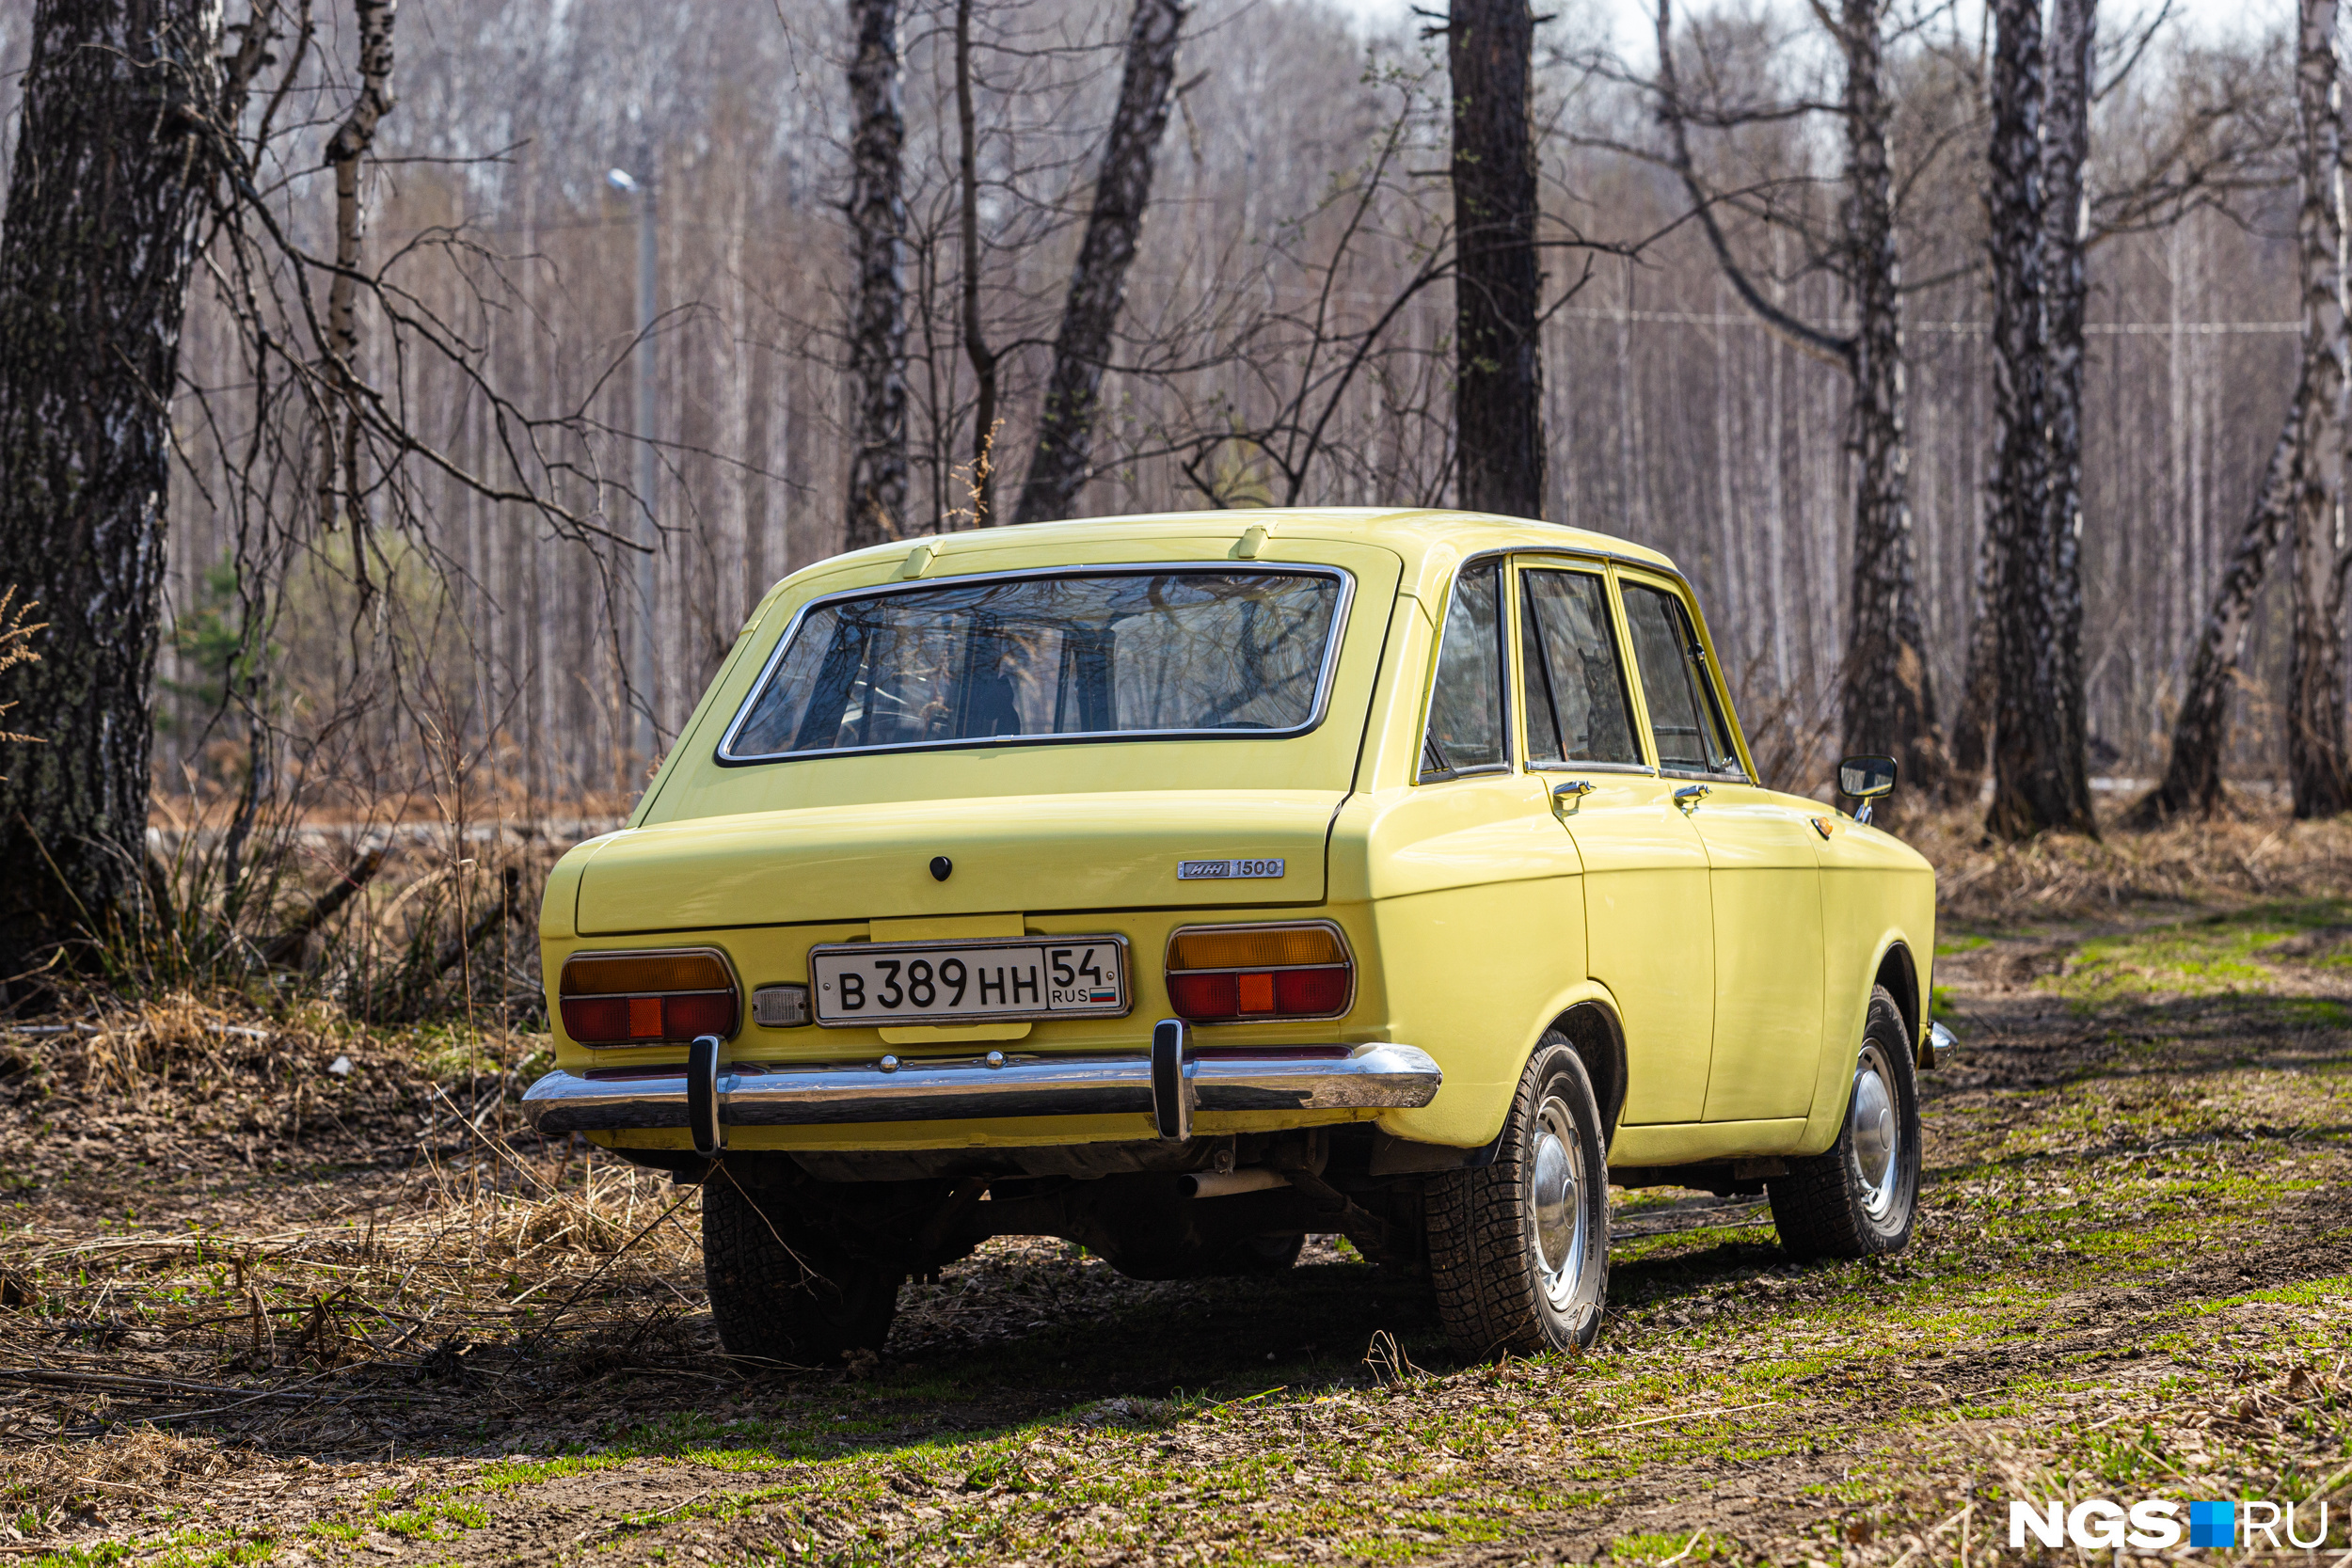 Машина раньше была оранжевого цвета, но Сергей перекрасил её в желтый